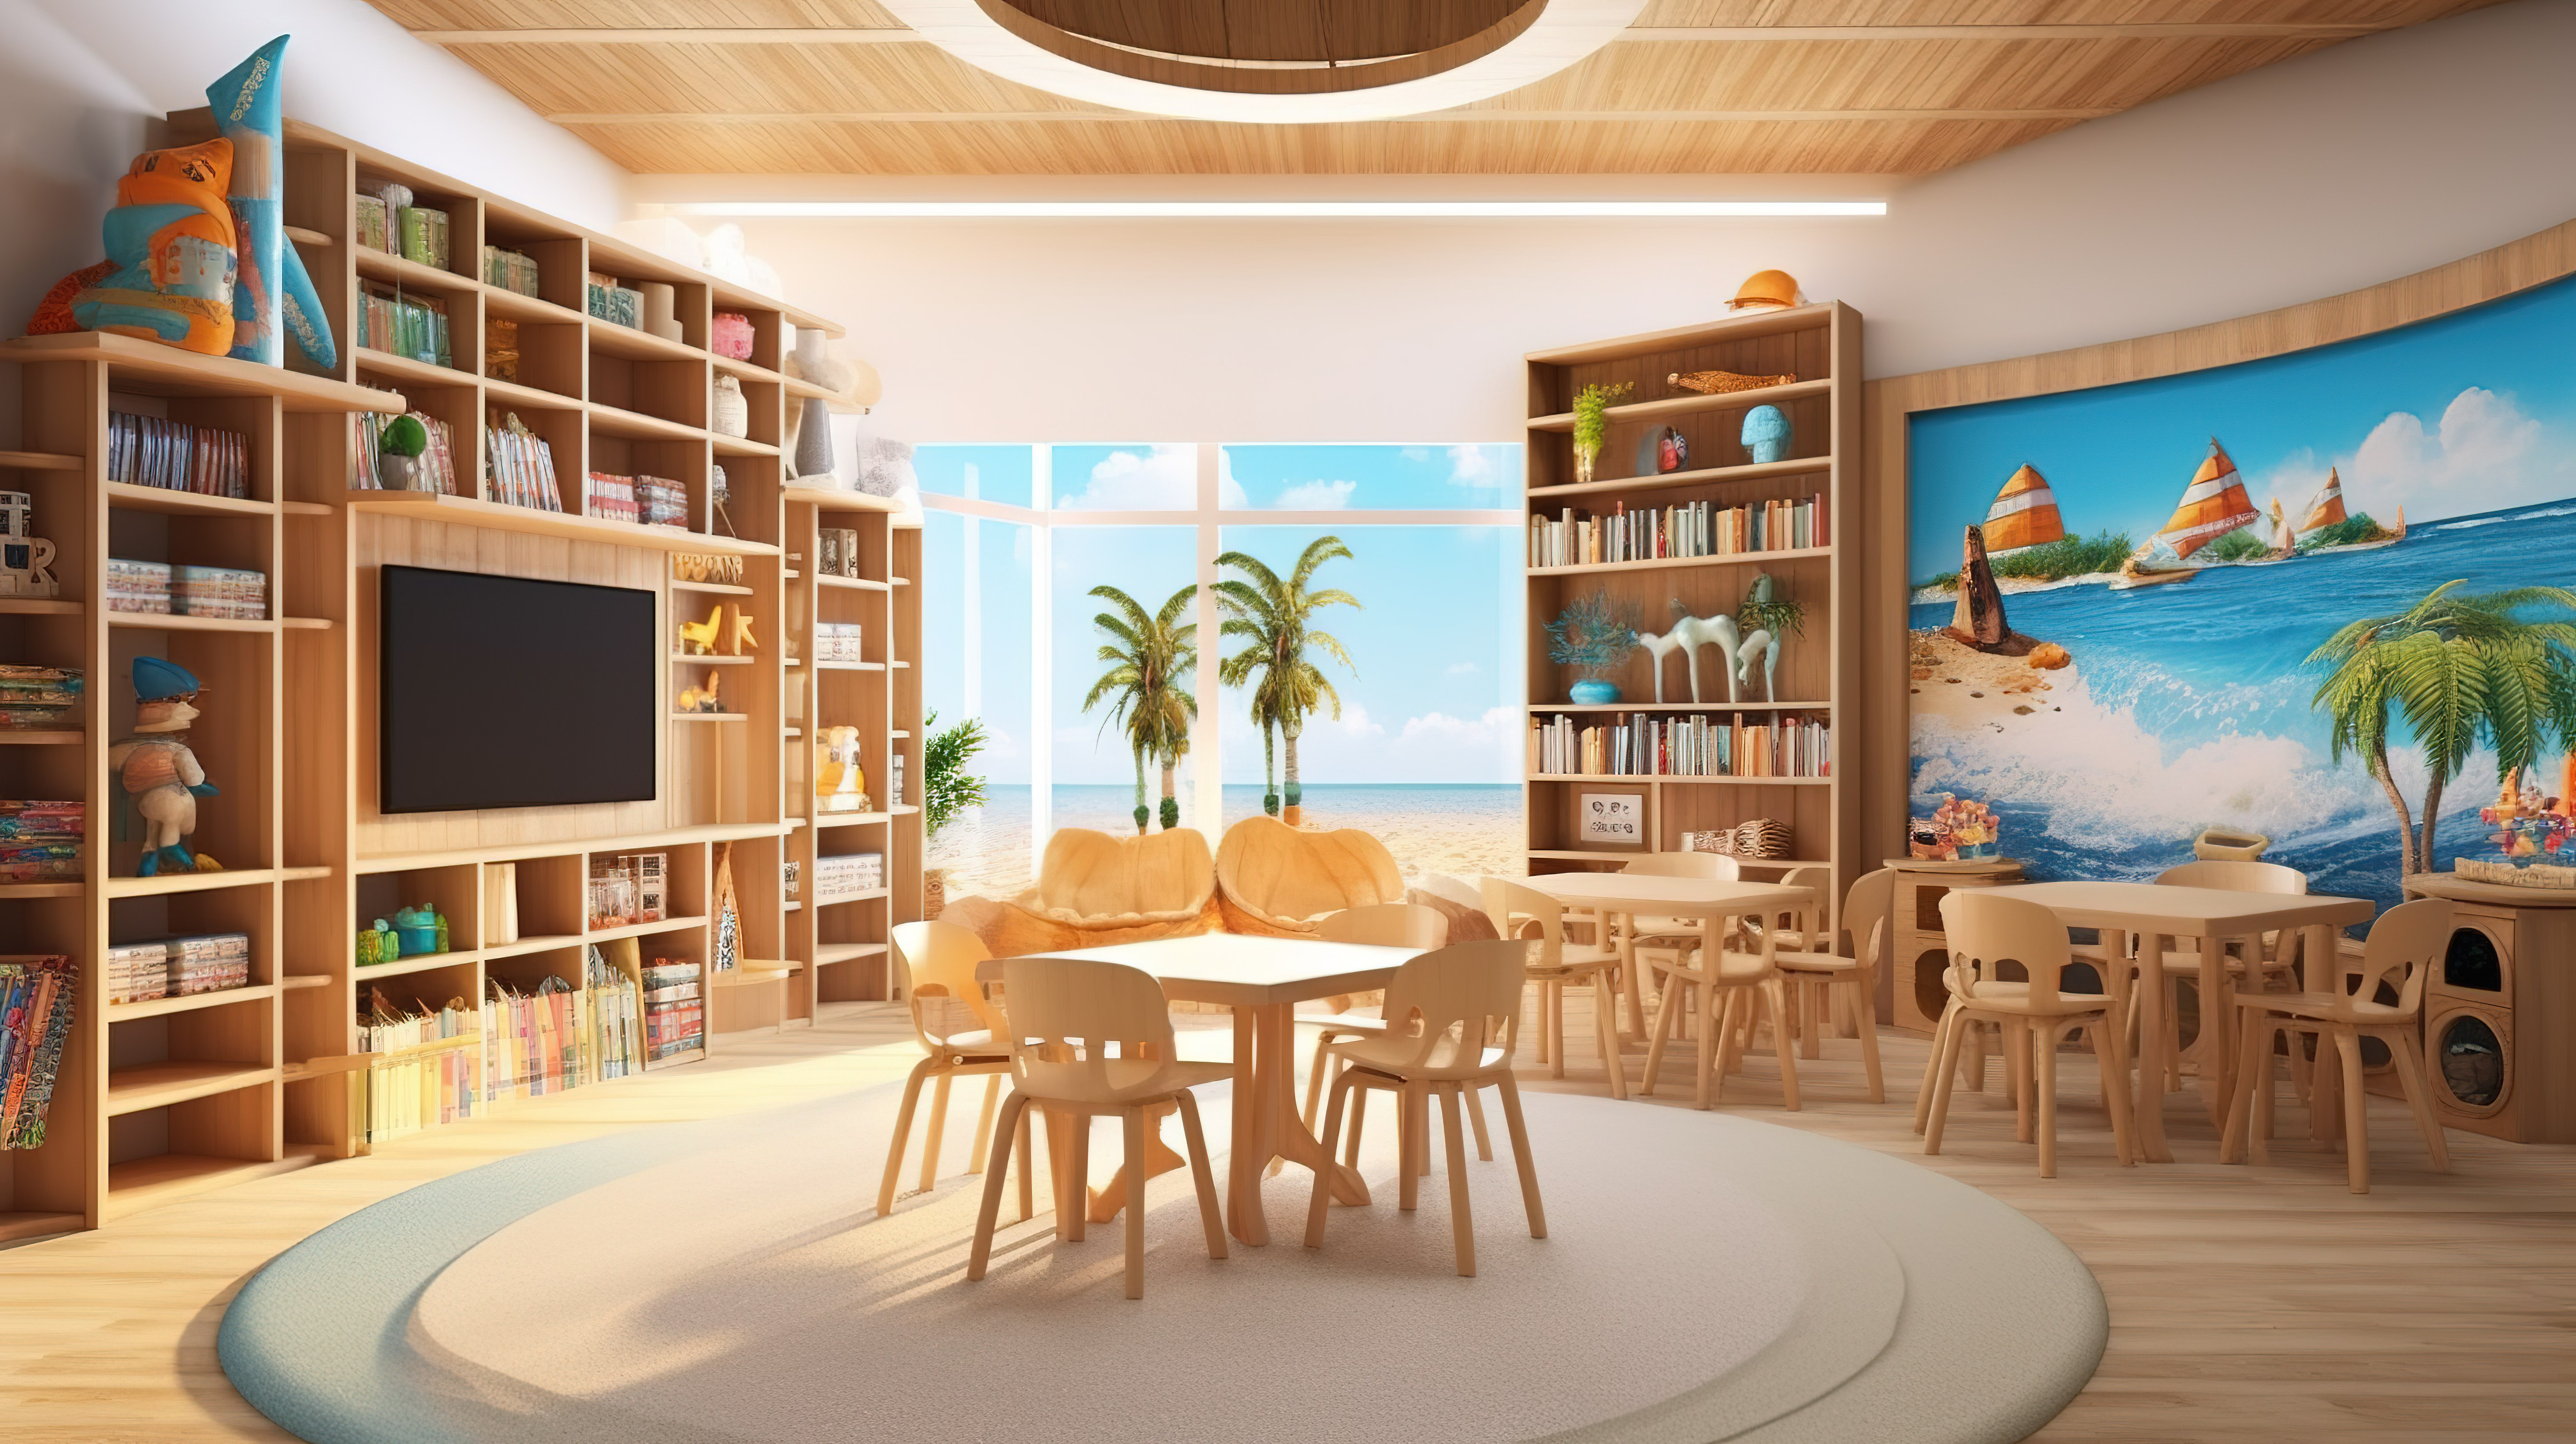 充满活力和俏皮的学校图书馆室内设计的 3D 渲染，以海洋为主题，为学生提供彩色木质元素图片